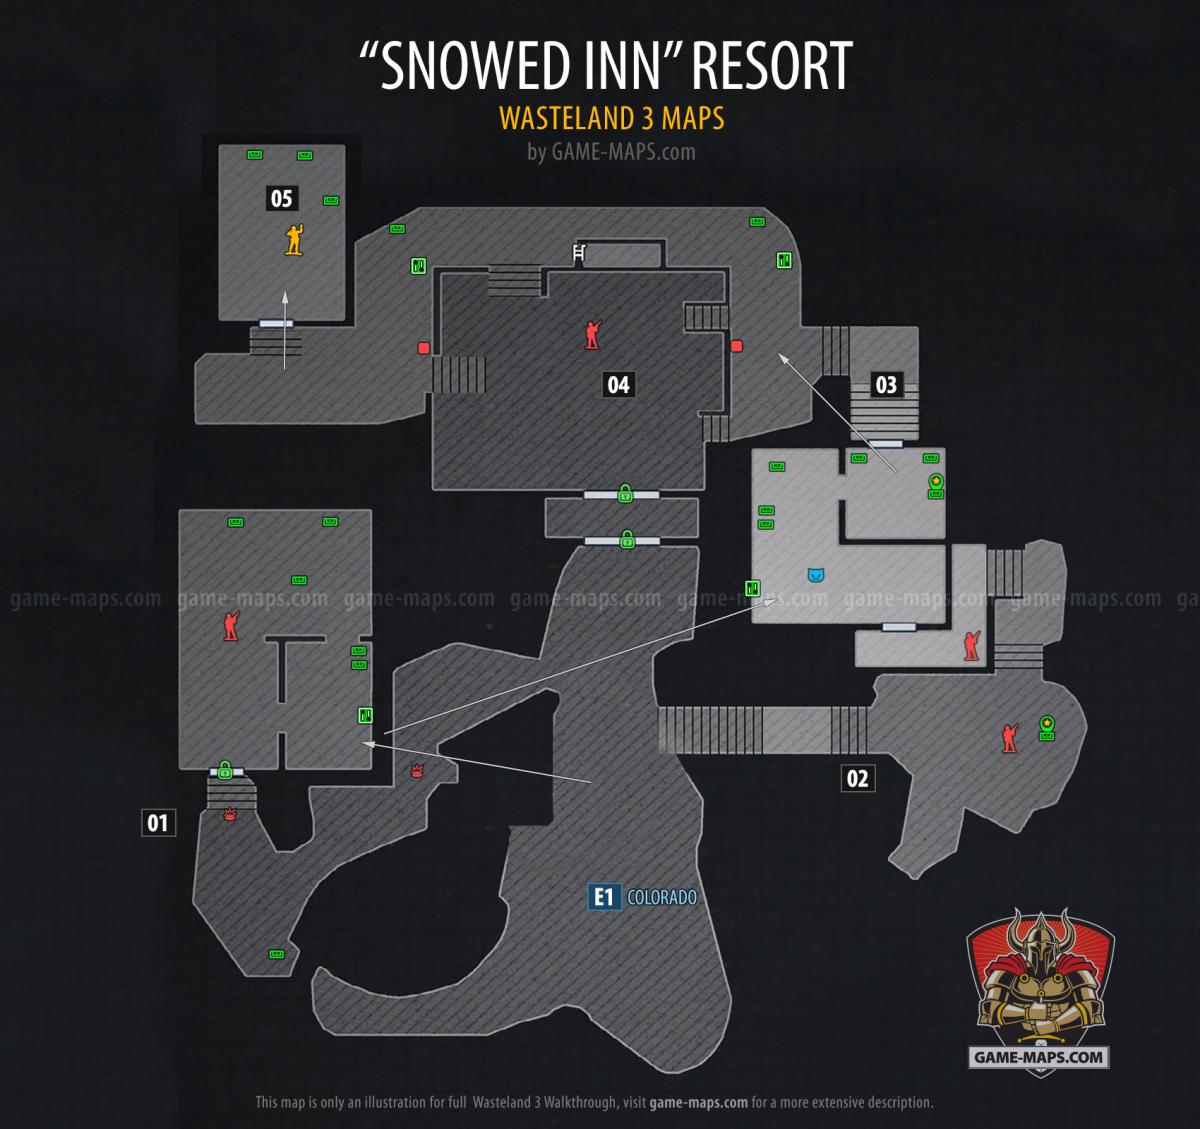 Snowed Inn Resort Small Version